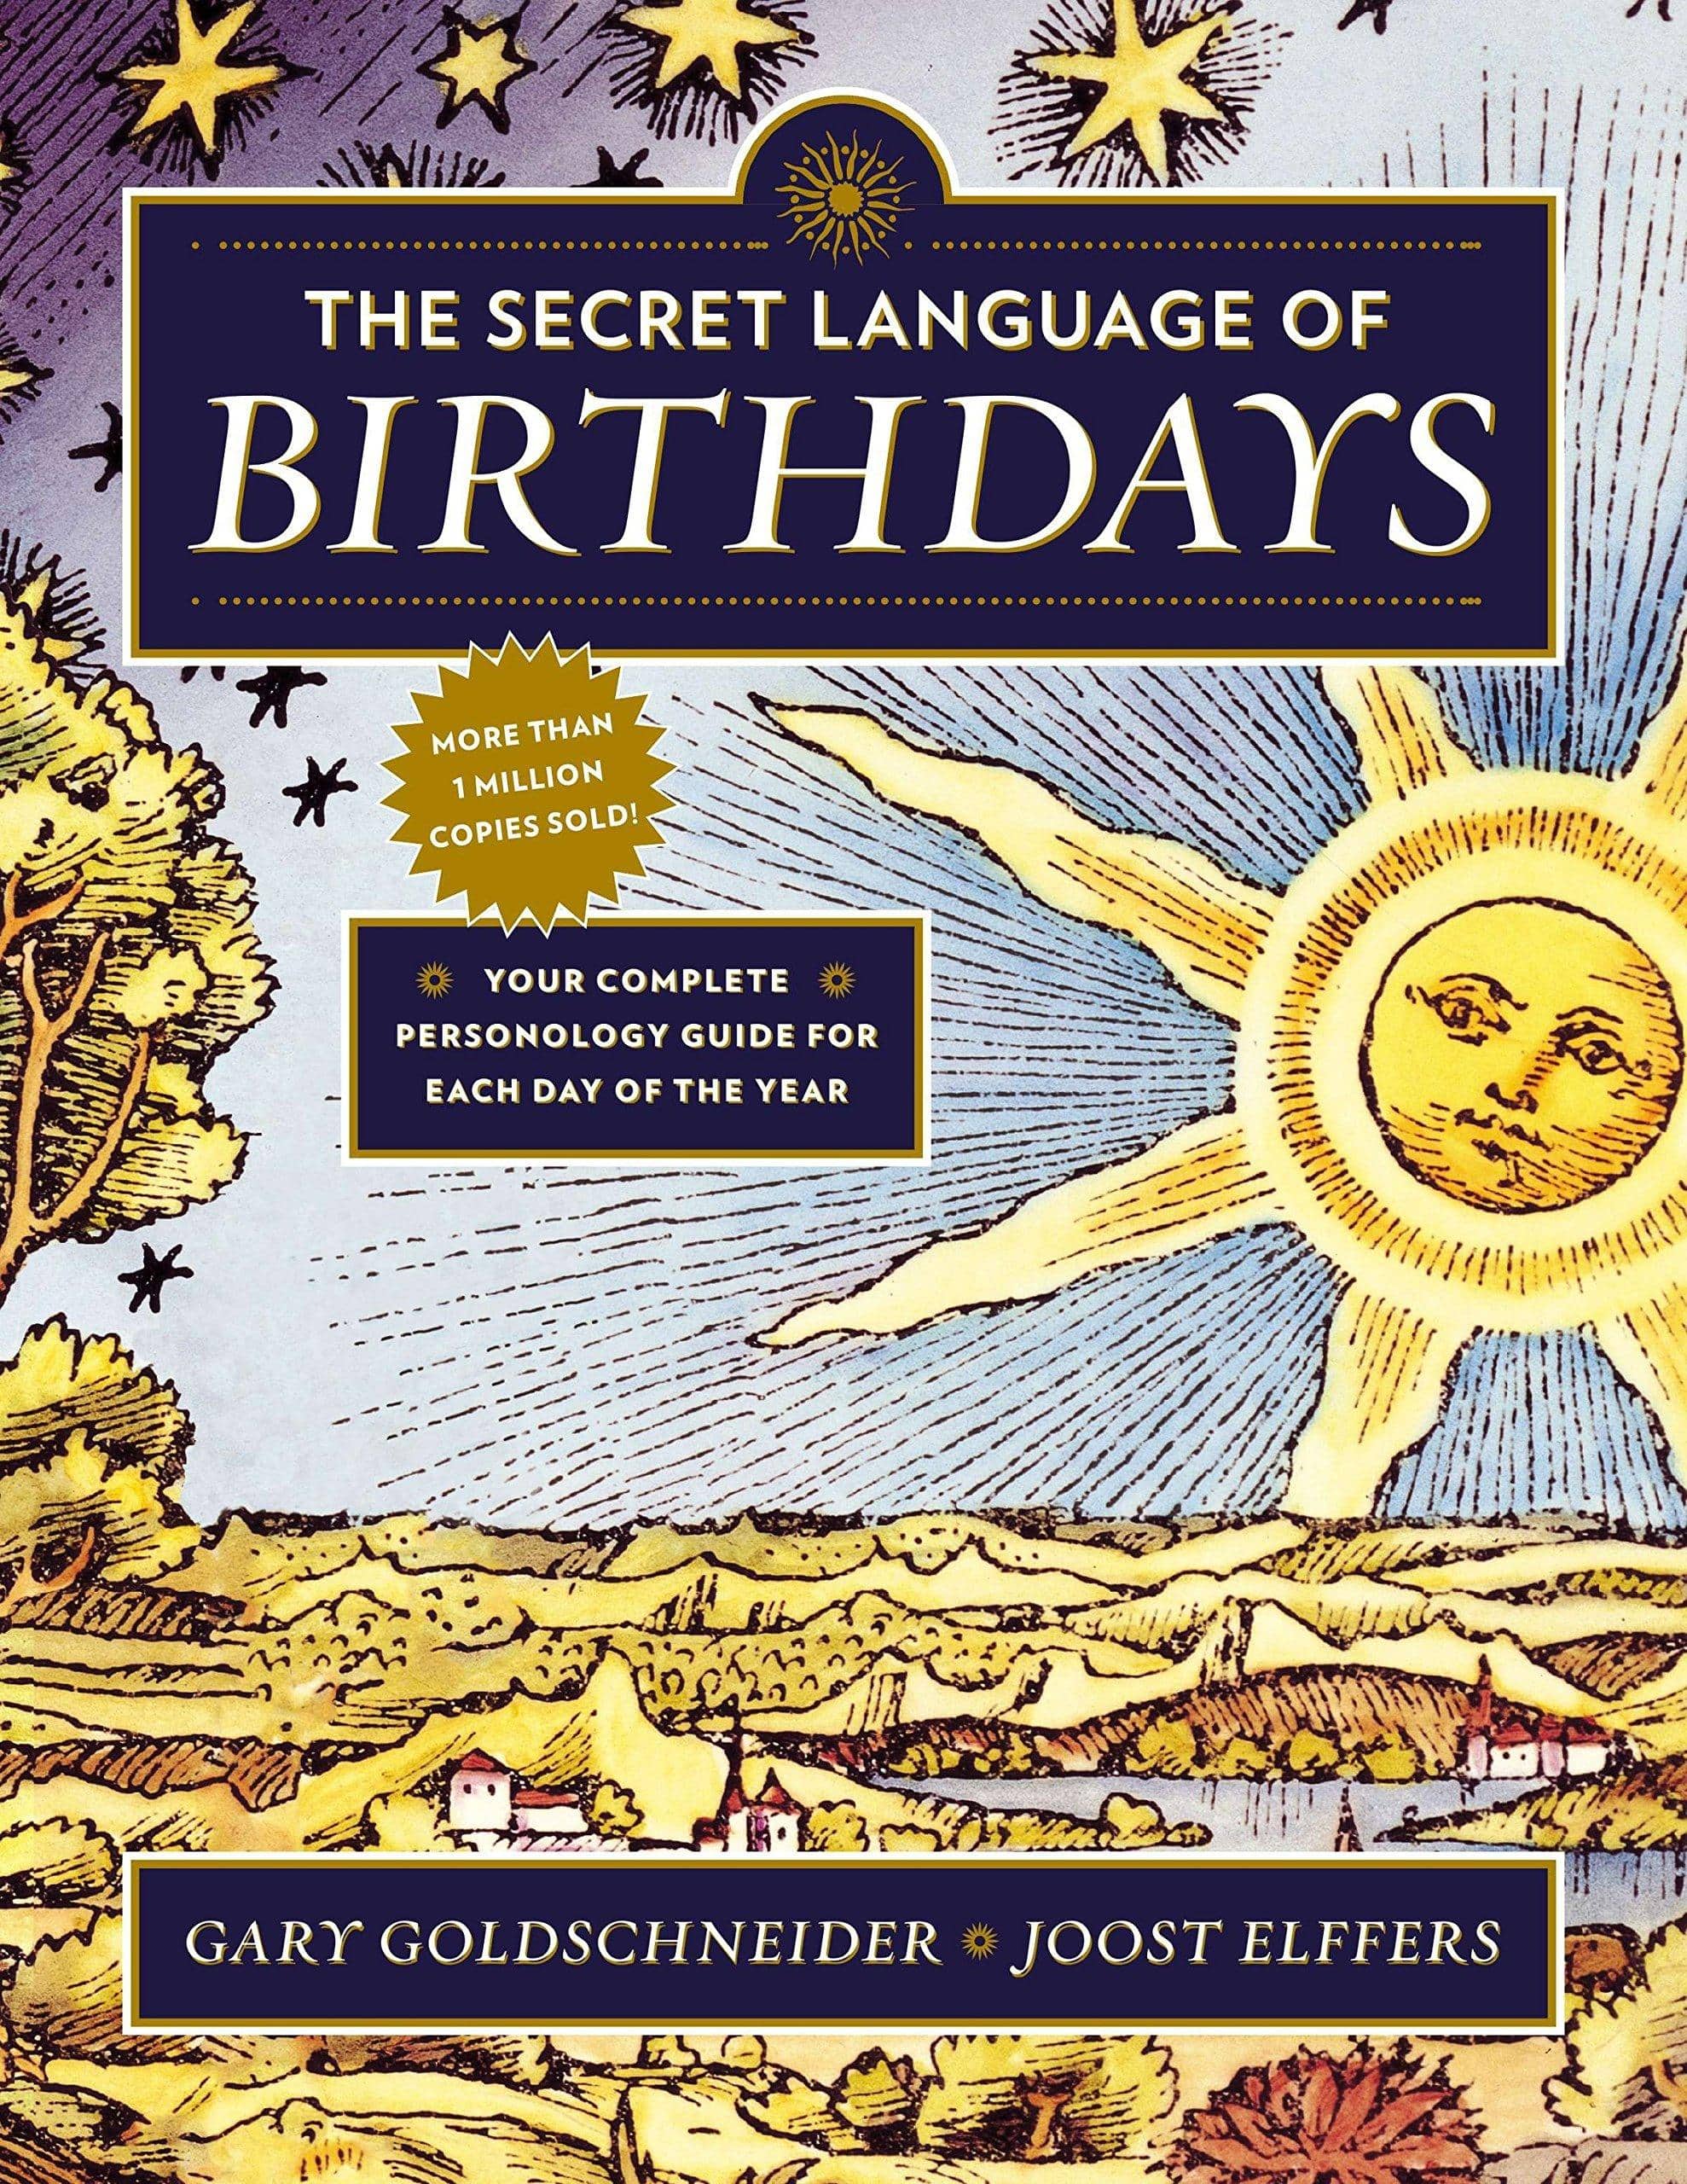 The Secret Language of Birthdays - SureShot Books Publishing LLC